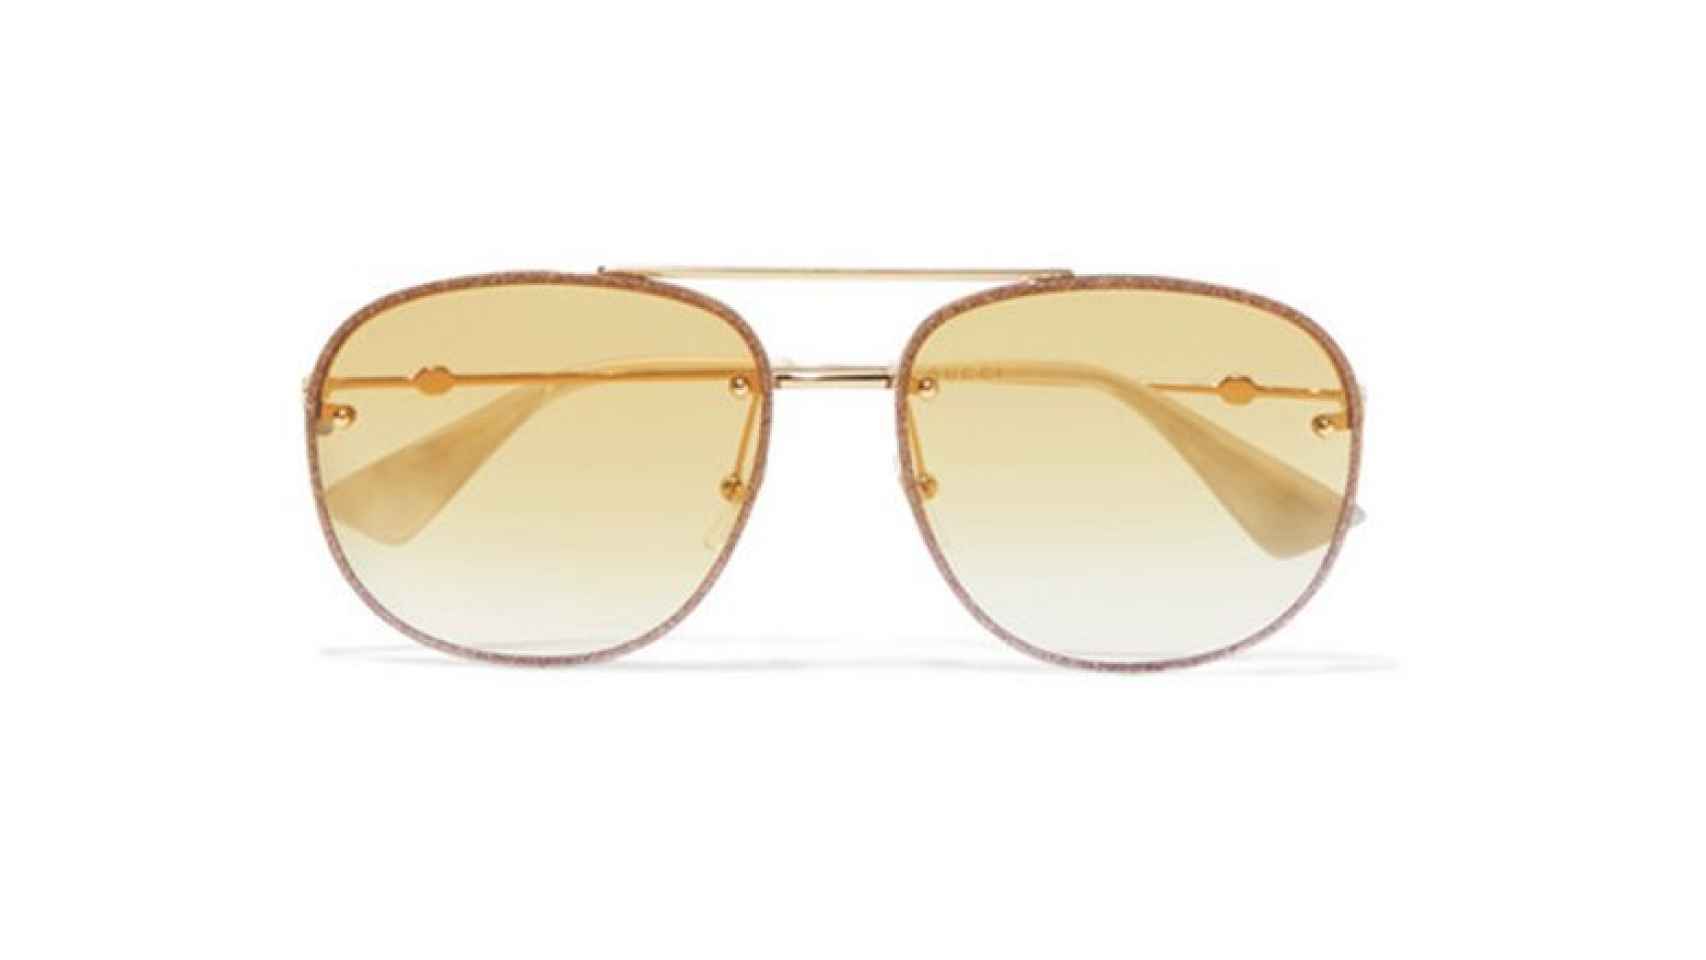 Las gafas de sol de Gucci,a un precio de 287 euros.